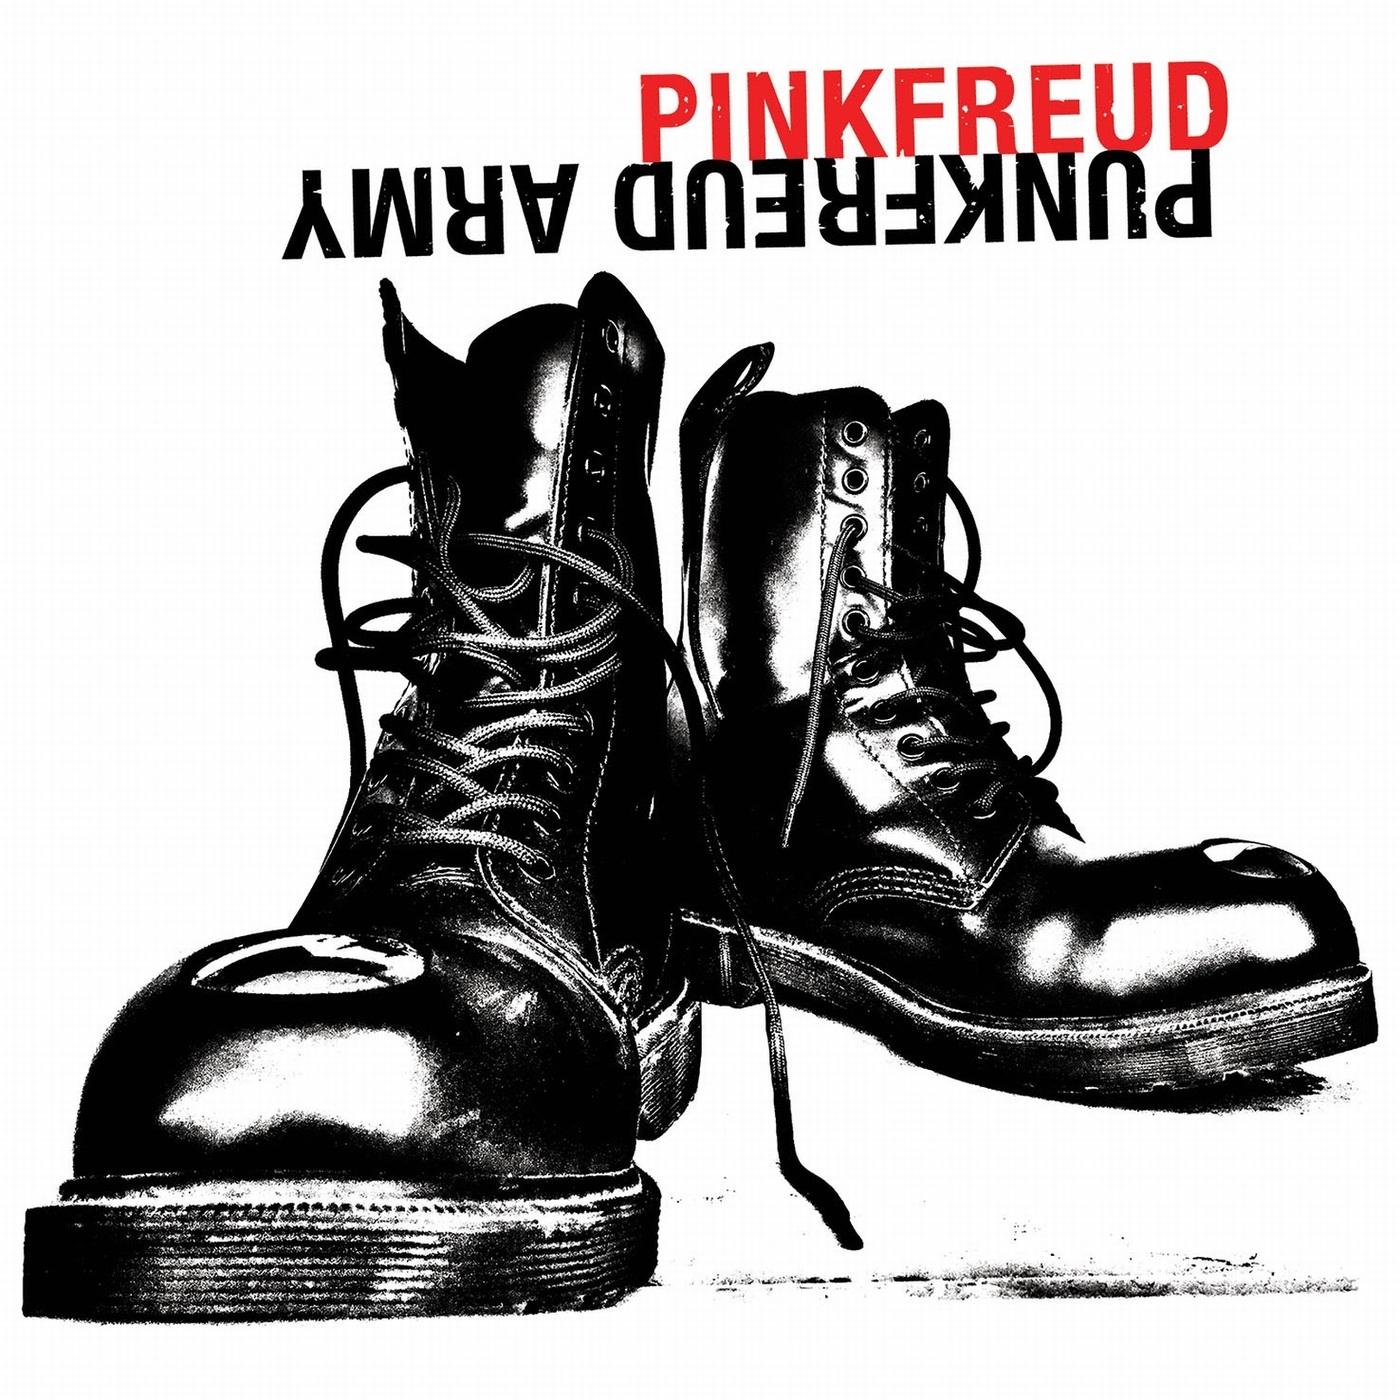 PINK FREUD - Punkfreud Army cover 